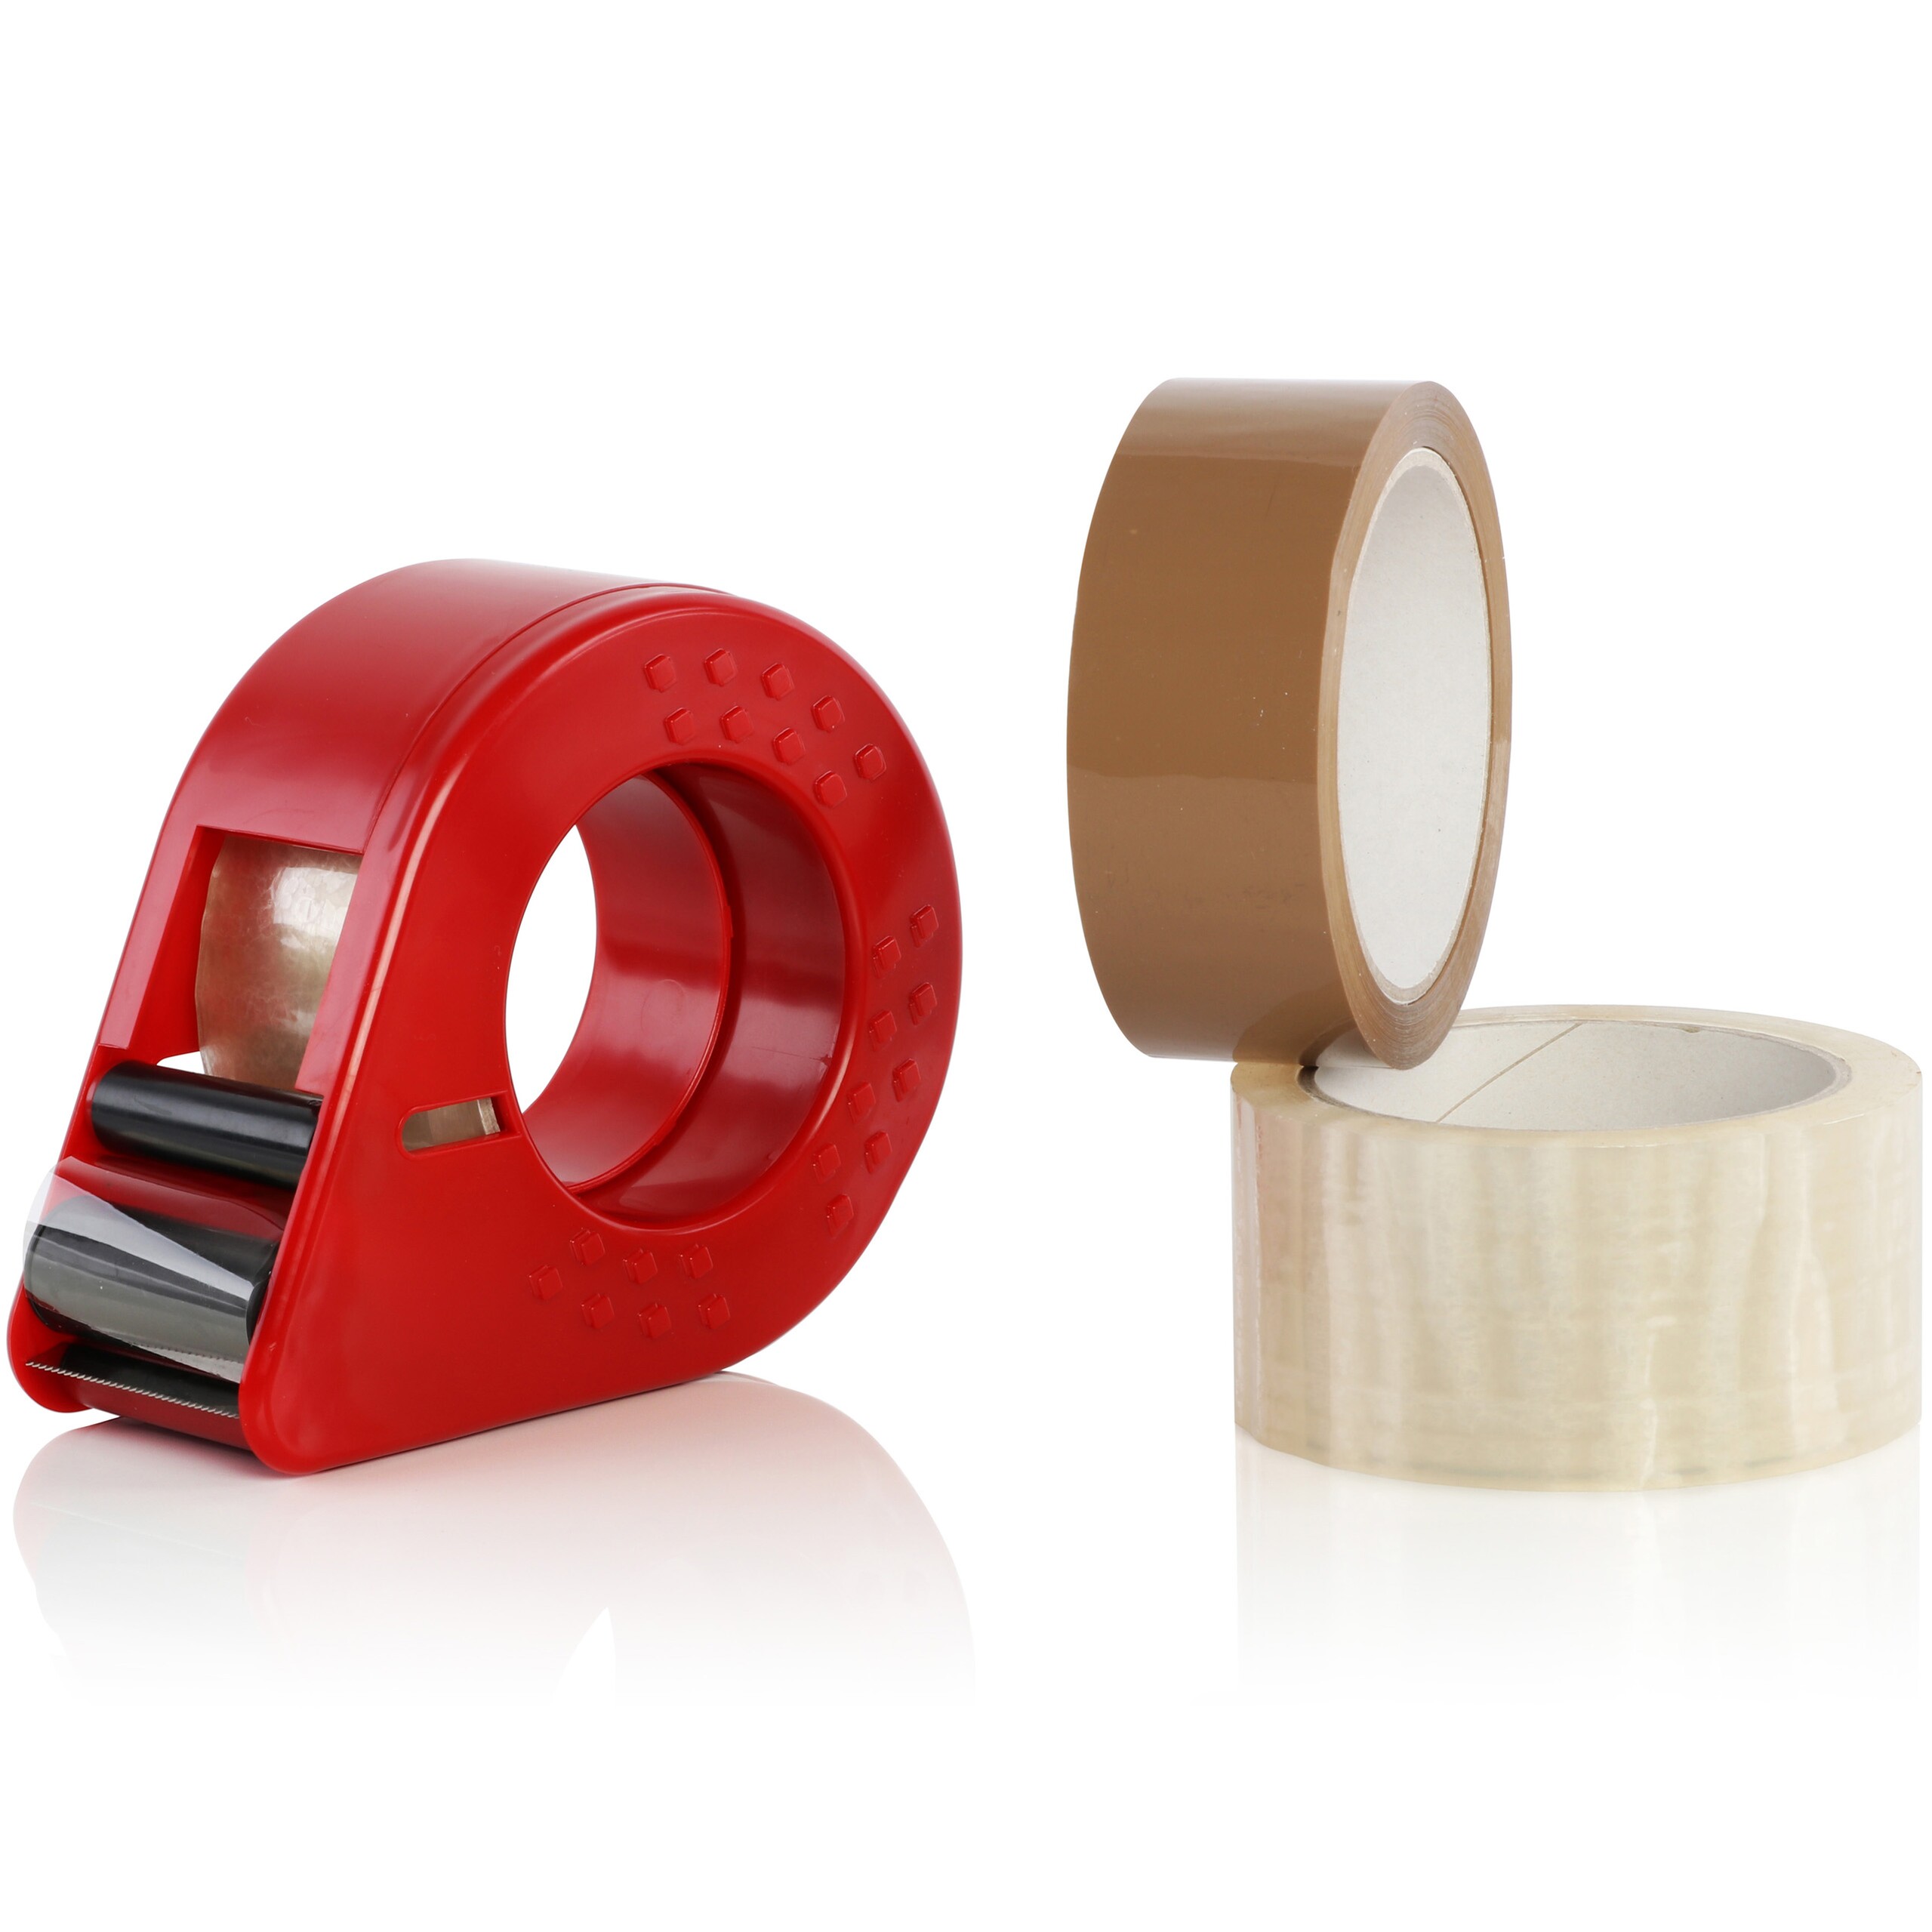 Dérouleur de ruban d'emballage rouge et deux rouleaux de ruban adhésif d'emballage (brun et transparent)